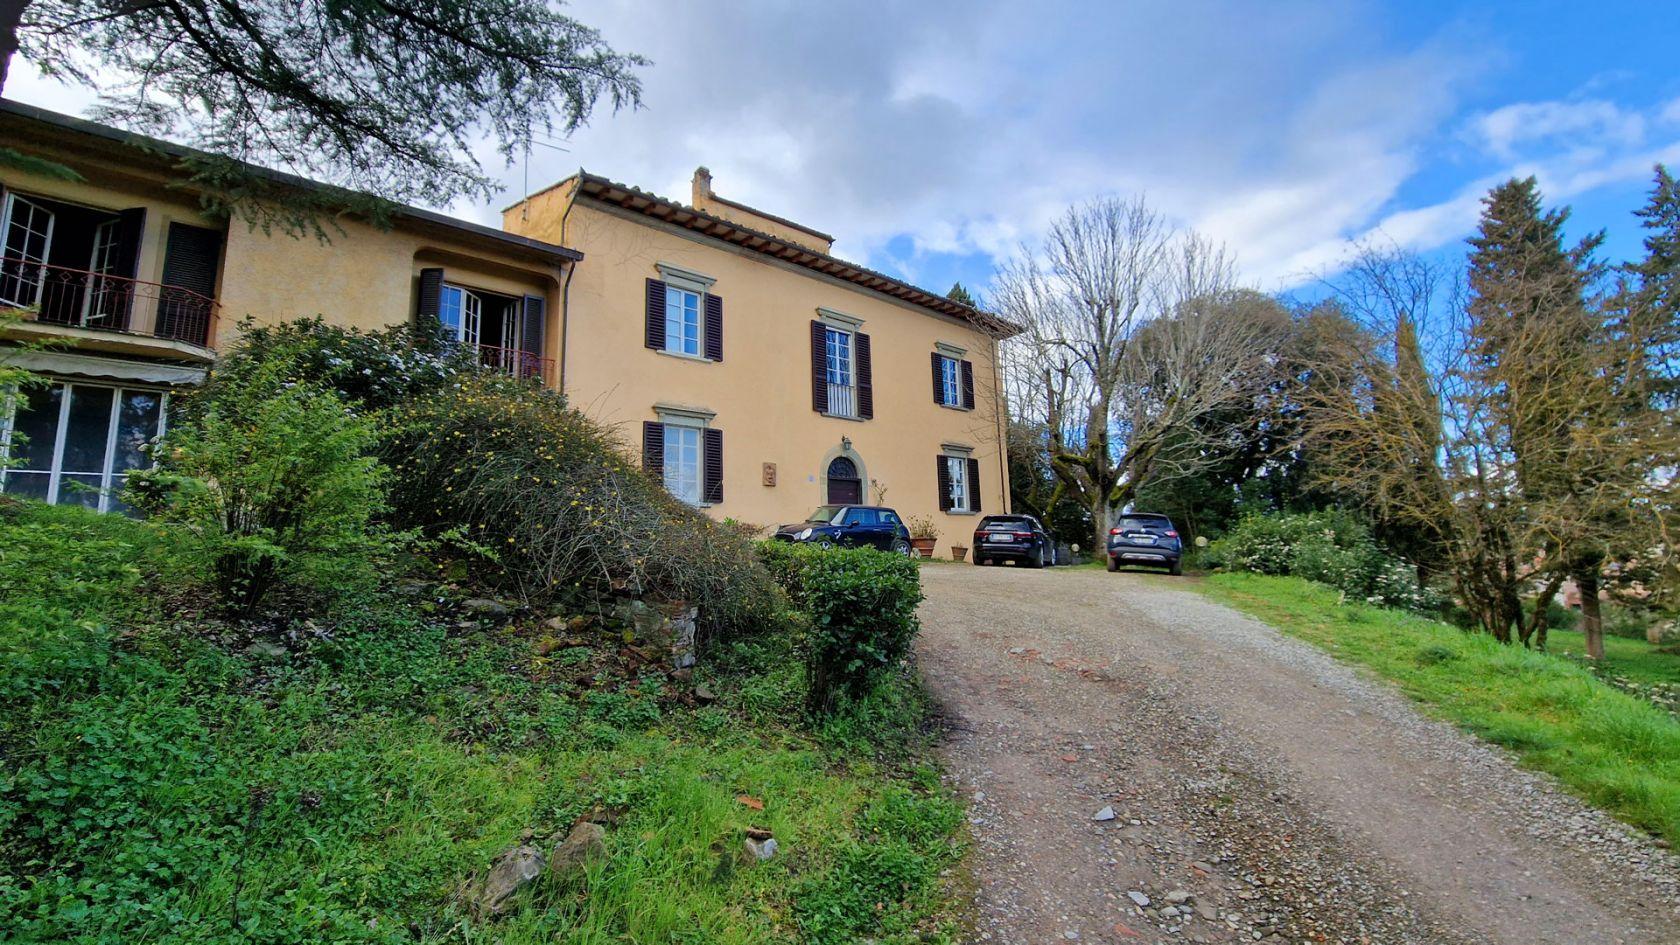 Toscana Immobiliare - Villa Leopoldina ottocentesca con annessi e 1 ettaro di terreno in vendita vicino alla città di Arezzo, in Toscana